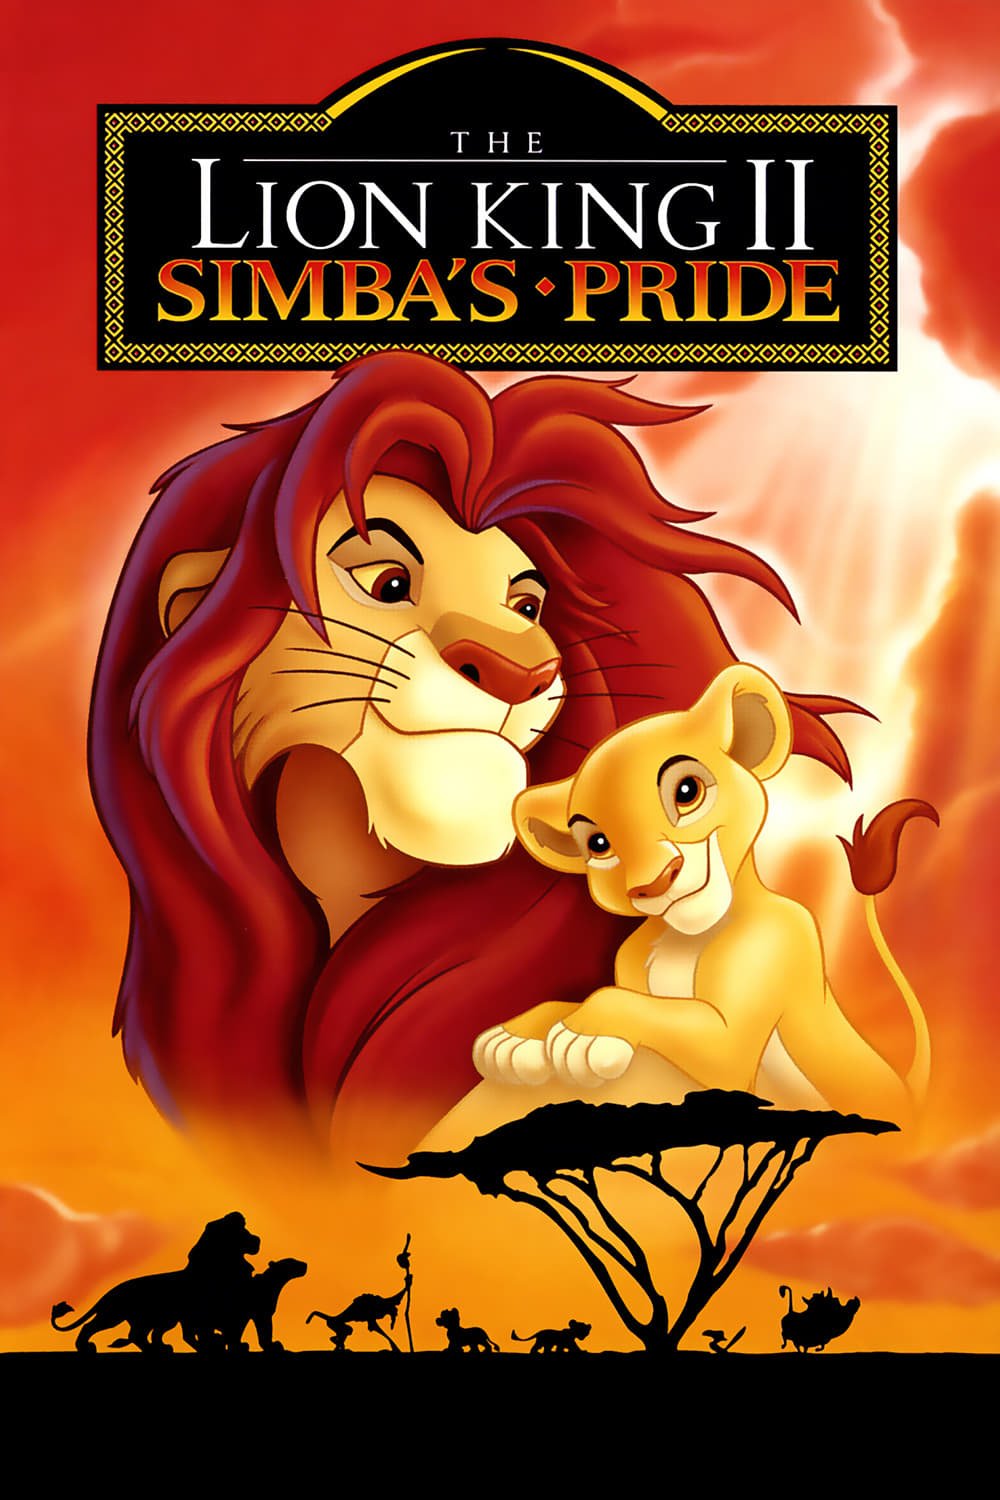 Le Roi Lion II: La fierté de Simba